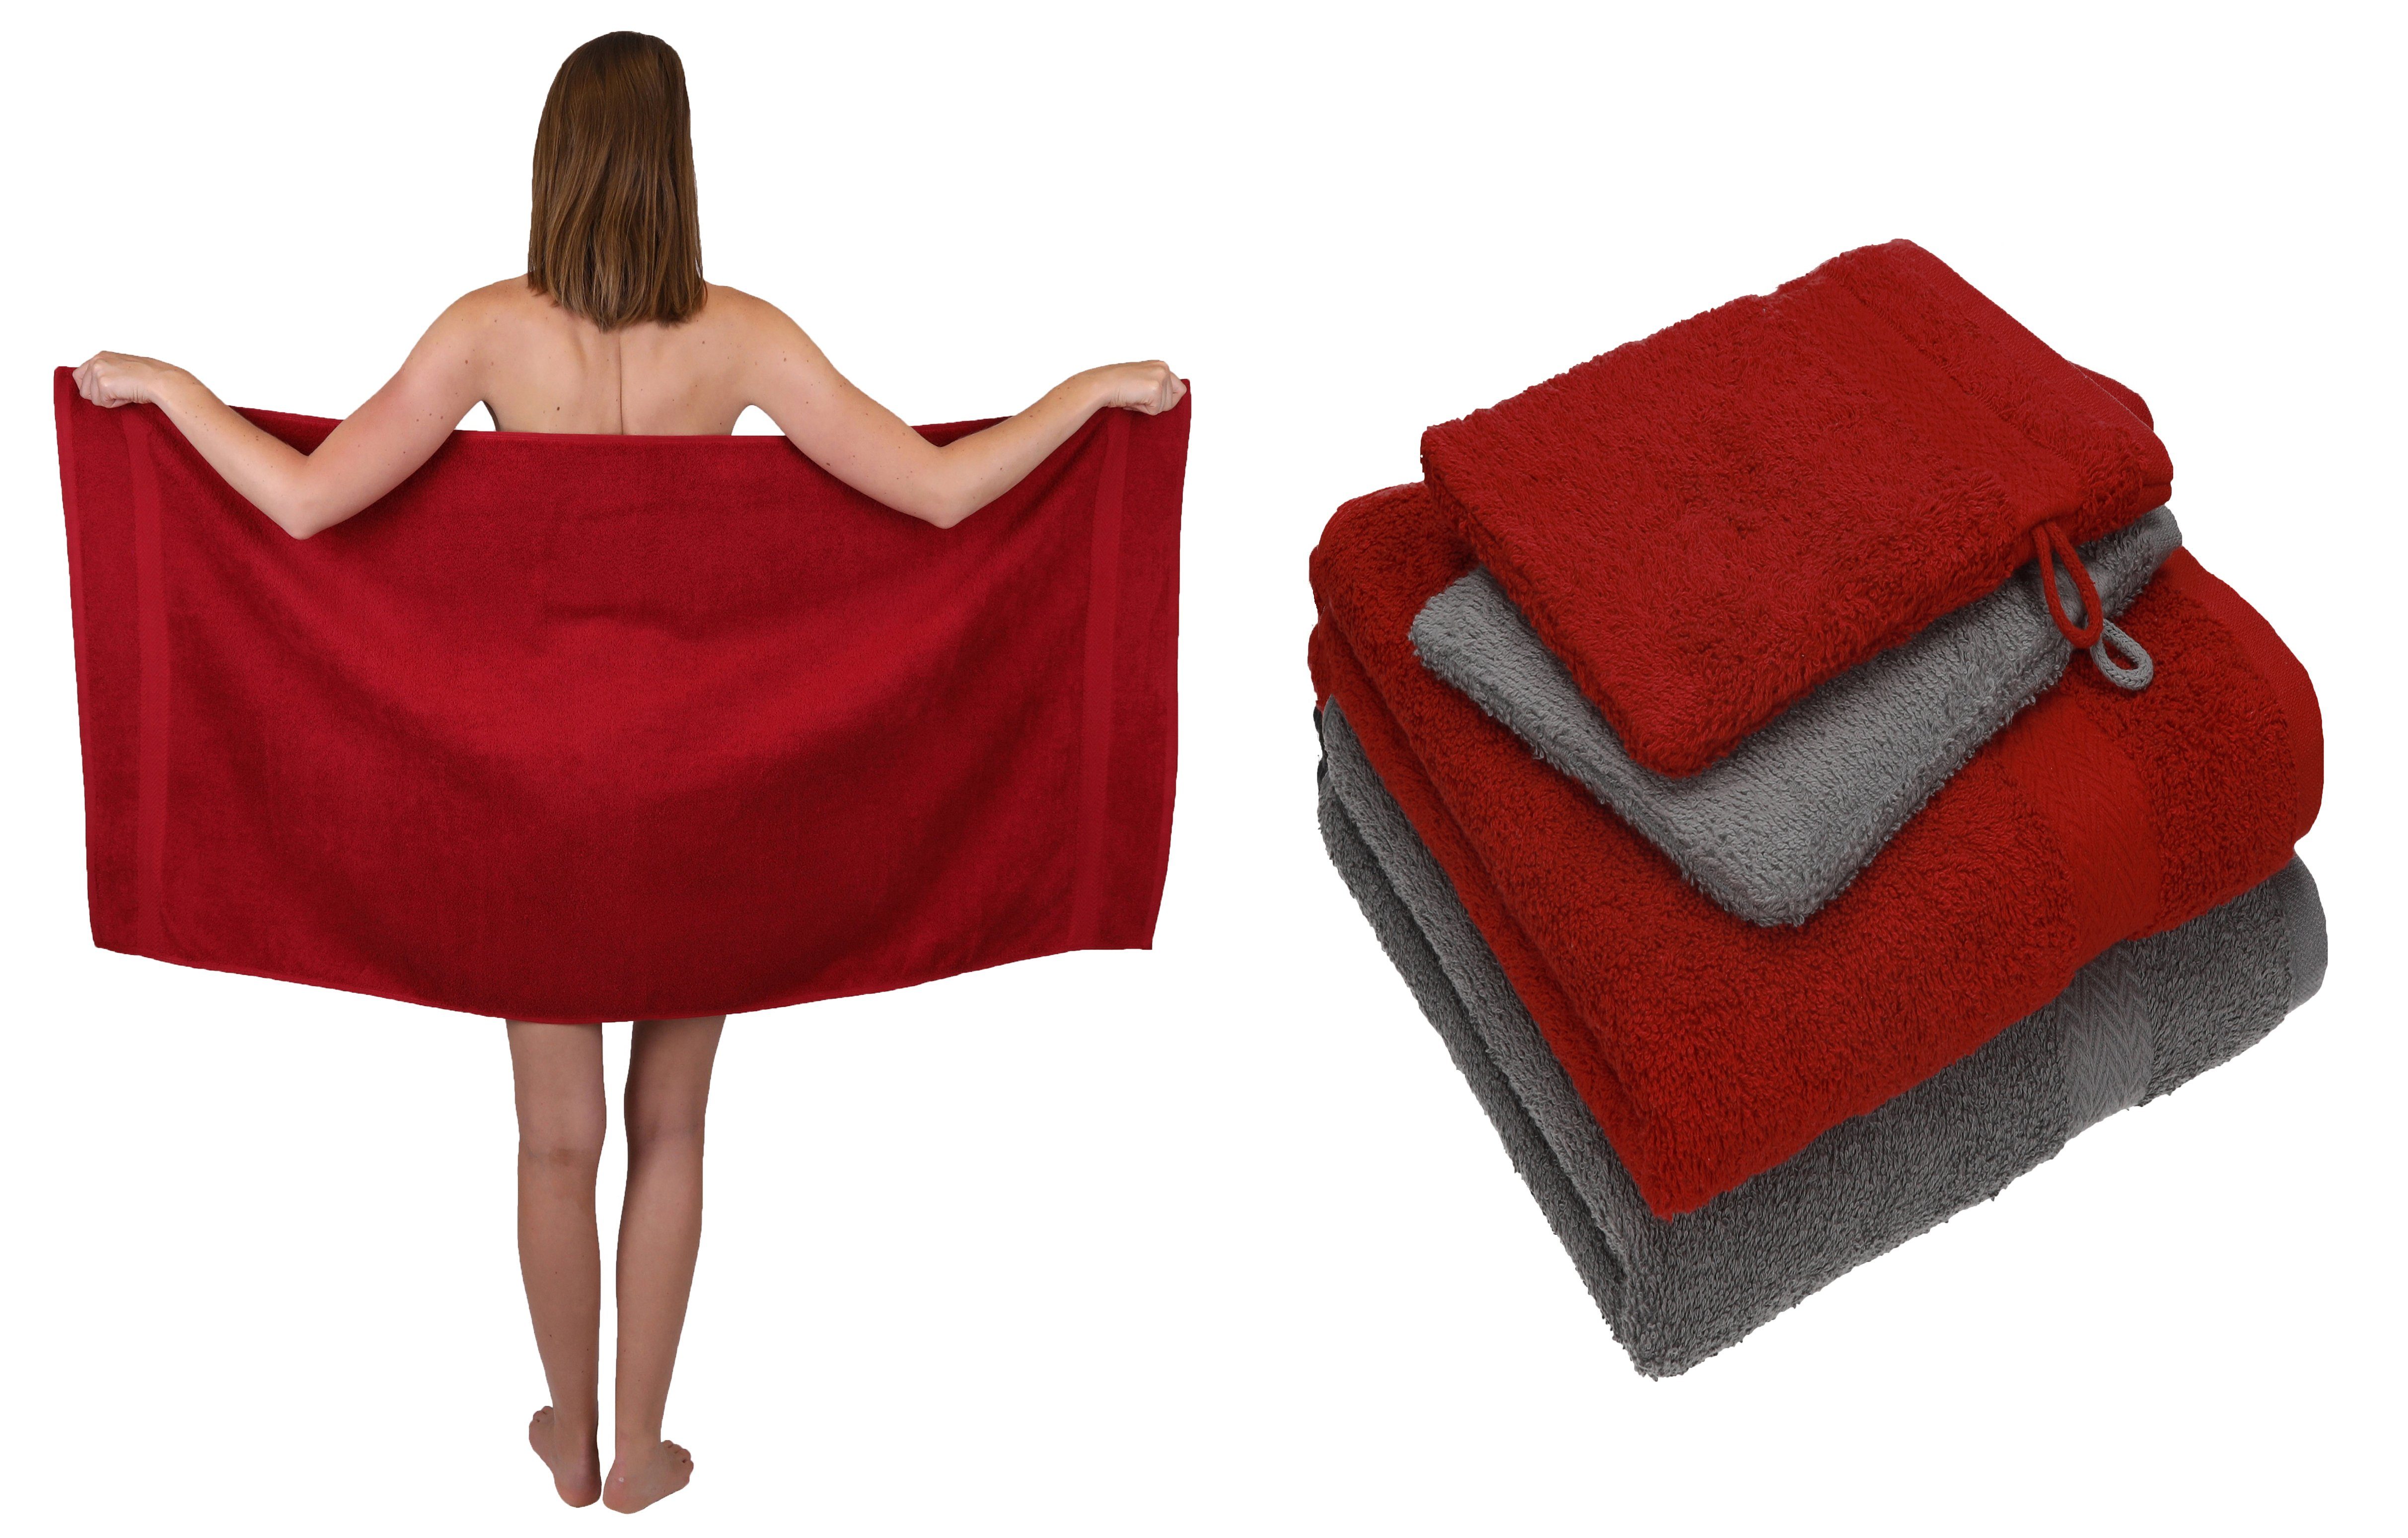 Betz Handtuch Set Betz 5 TLG. Handtuch Set Single Pack 100% Baumwolle 1 Duschtuch 2 Handtücher 2 Waschhandschuhe, Baumwolle, (5-tlg) rubinrot | Handtuch-Sets